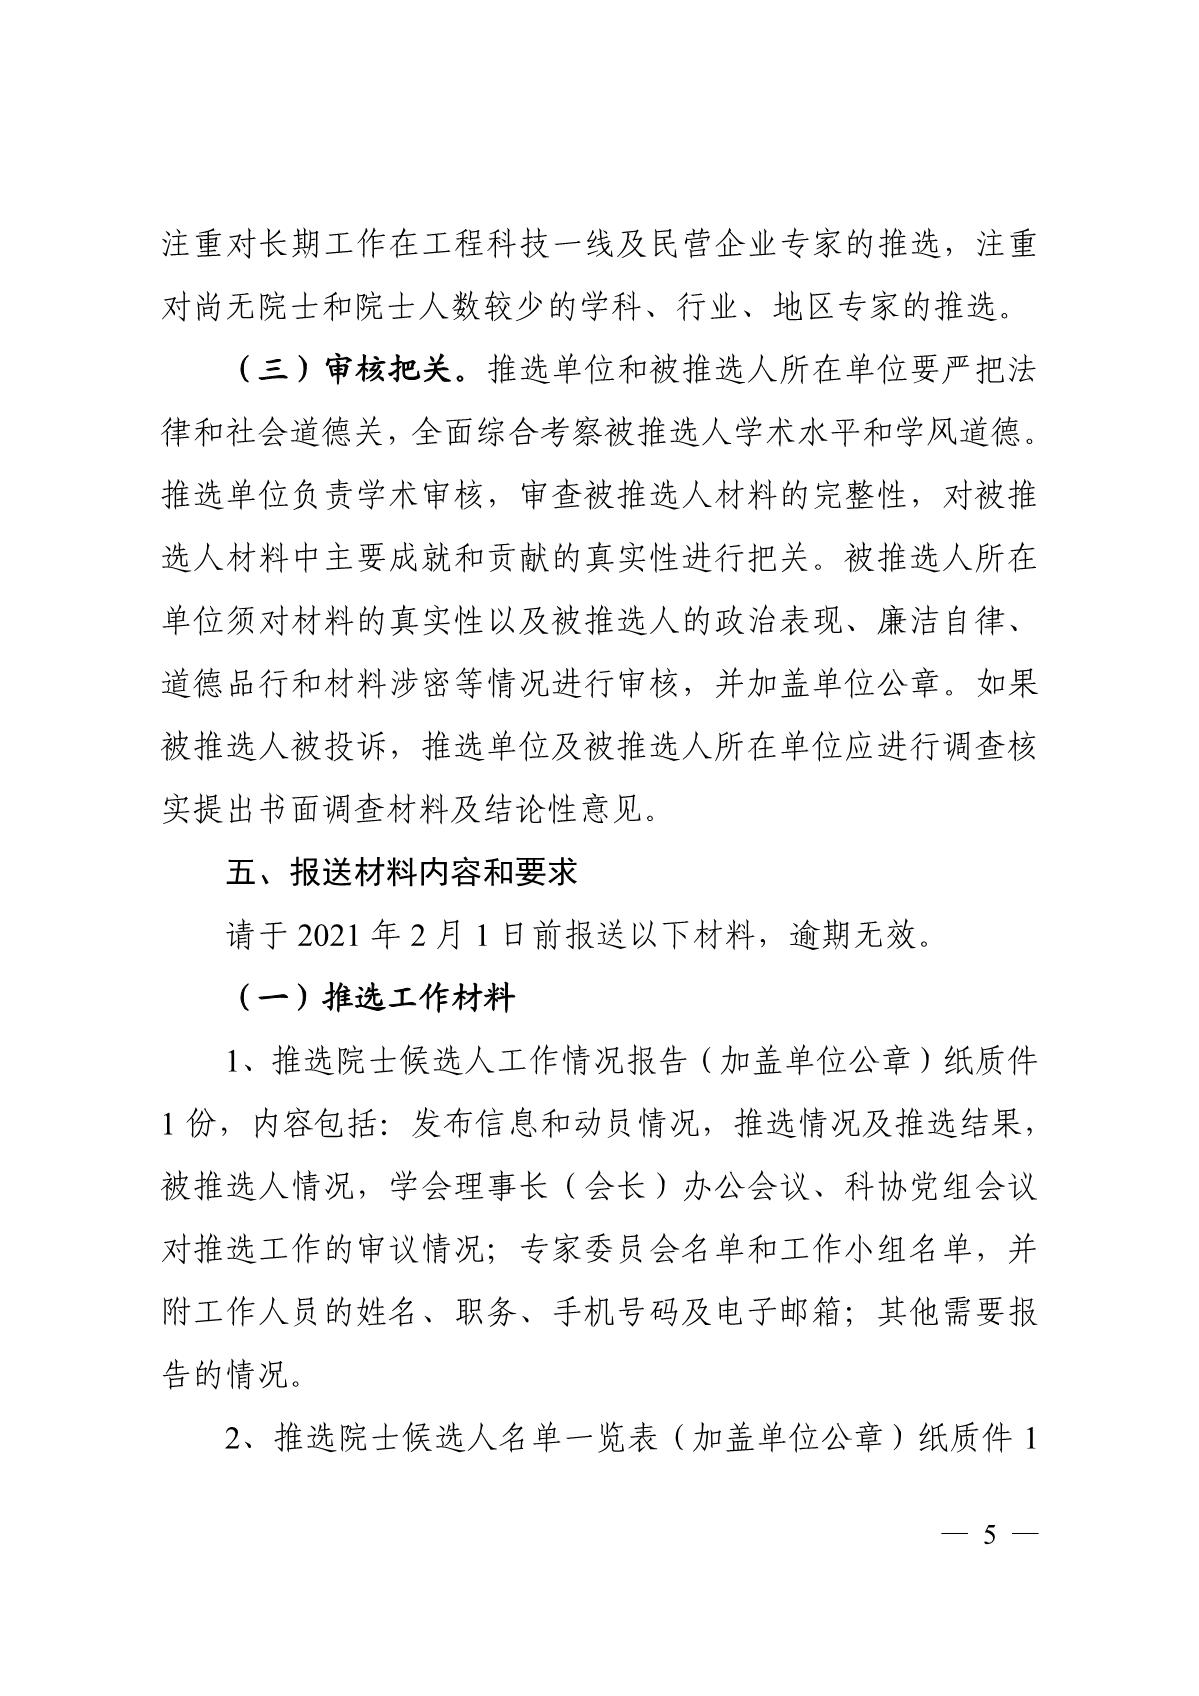 关于组织推选2021年中国工程院院士候选人的通知_5.JPG